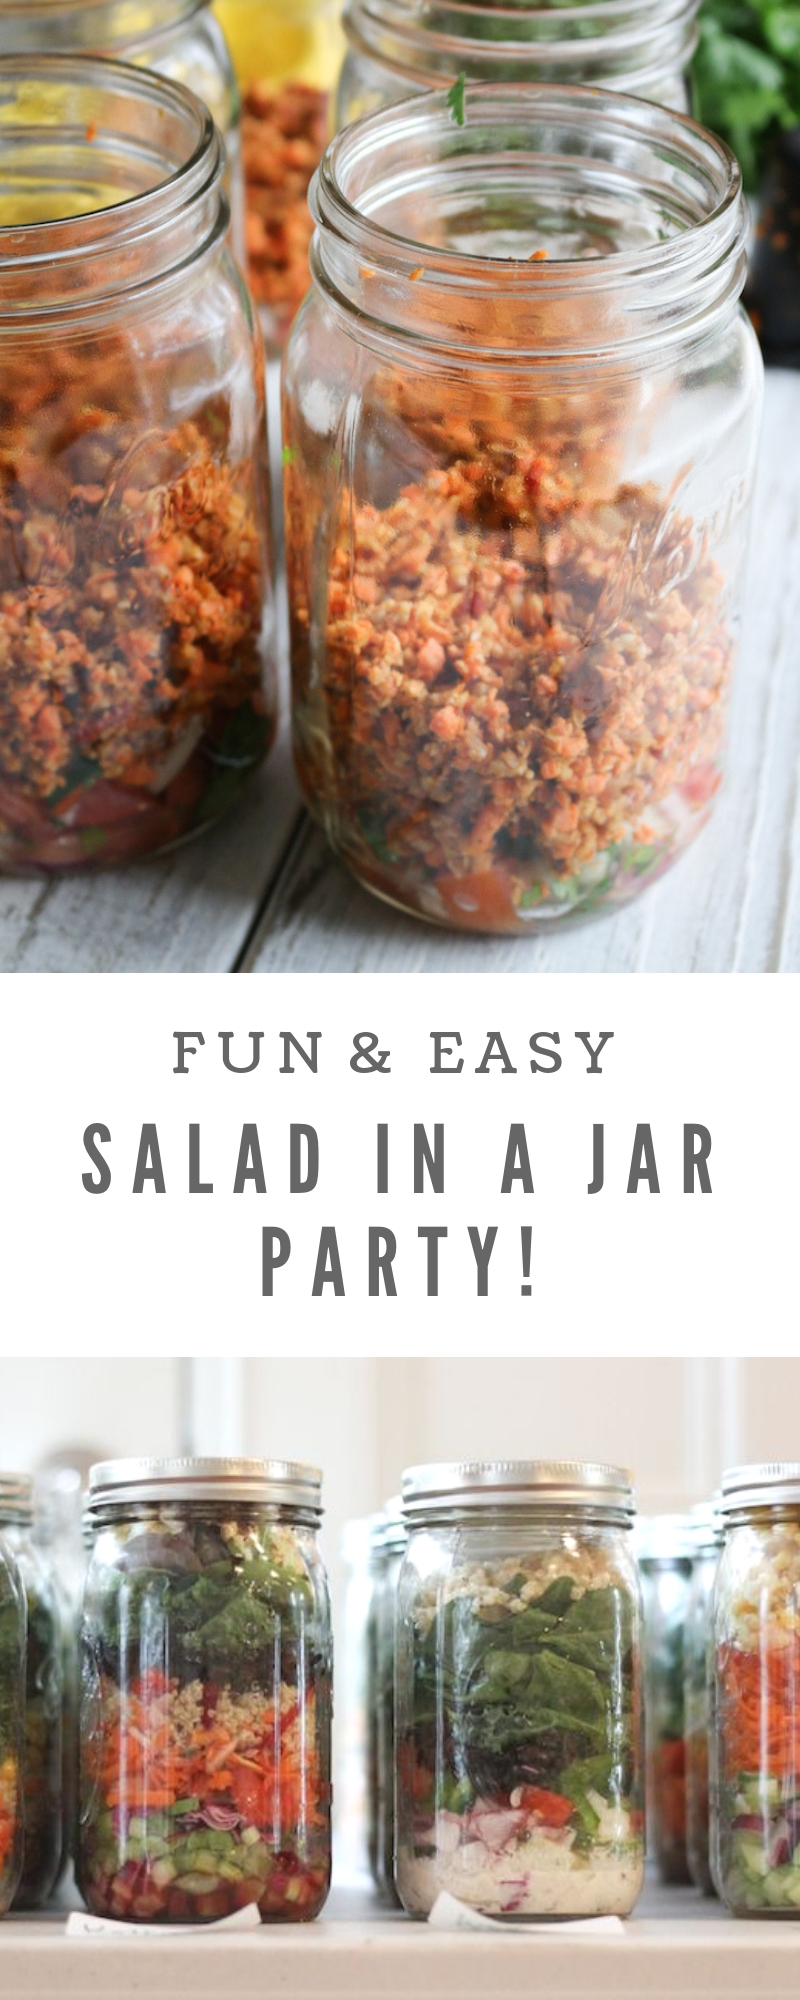 Salad In A Jar Party!